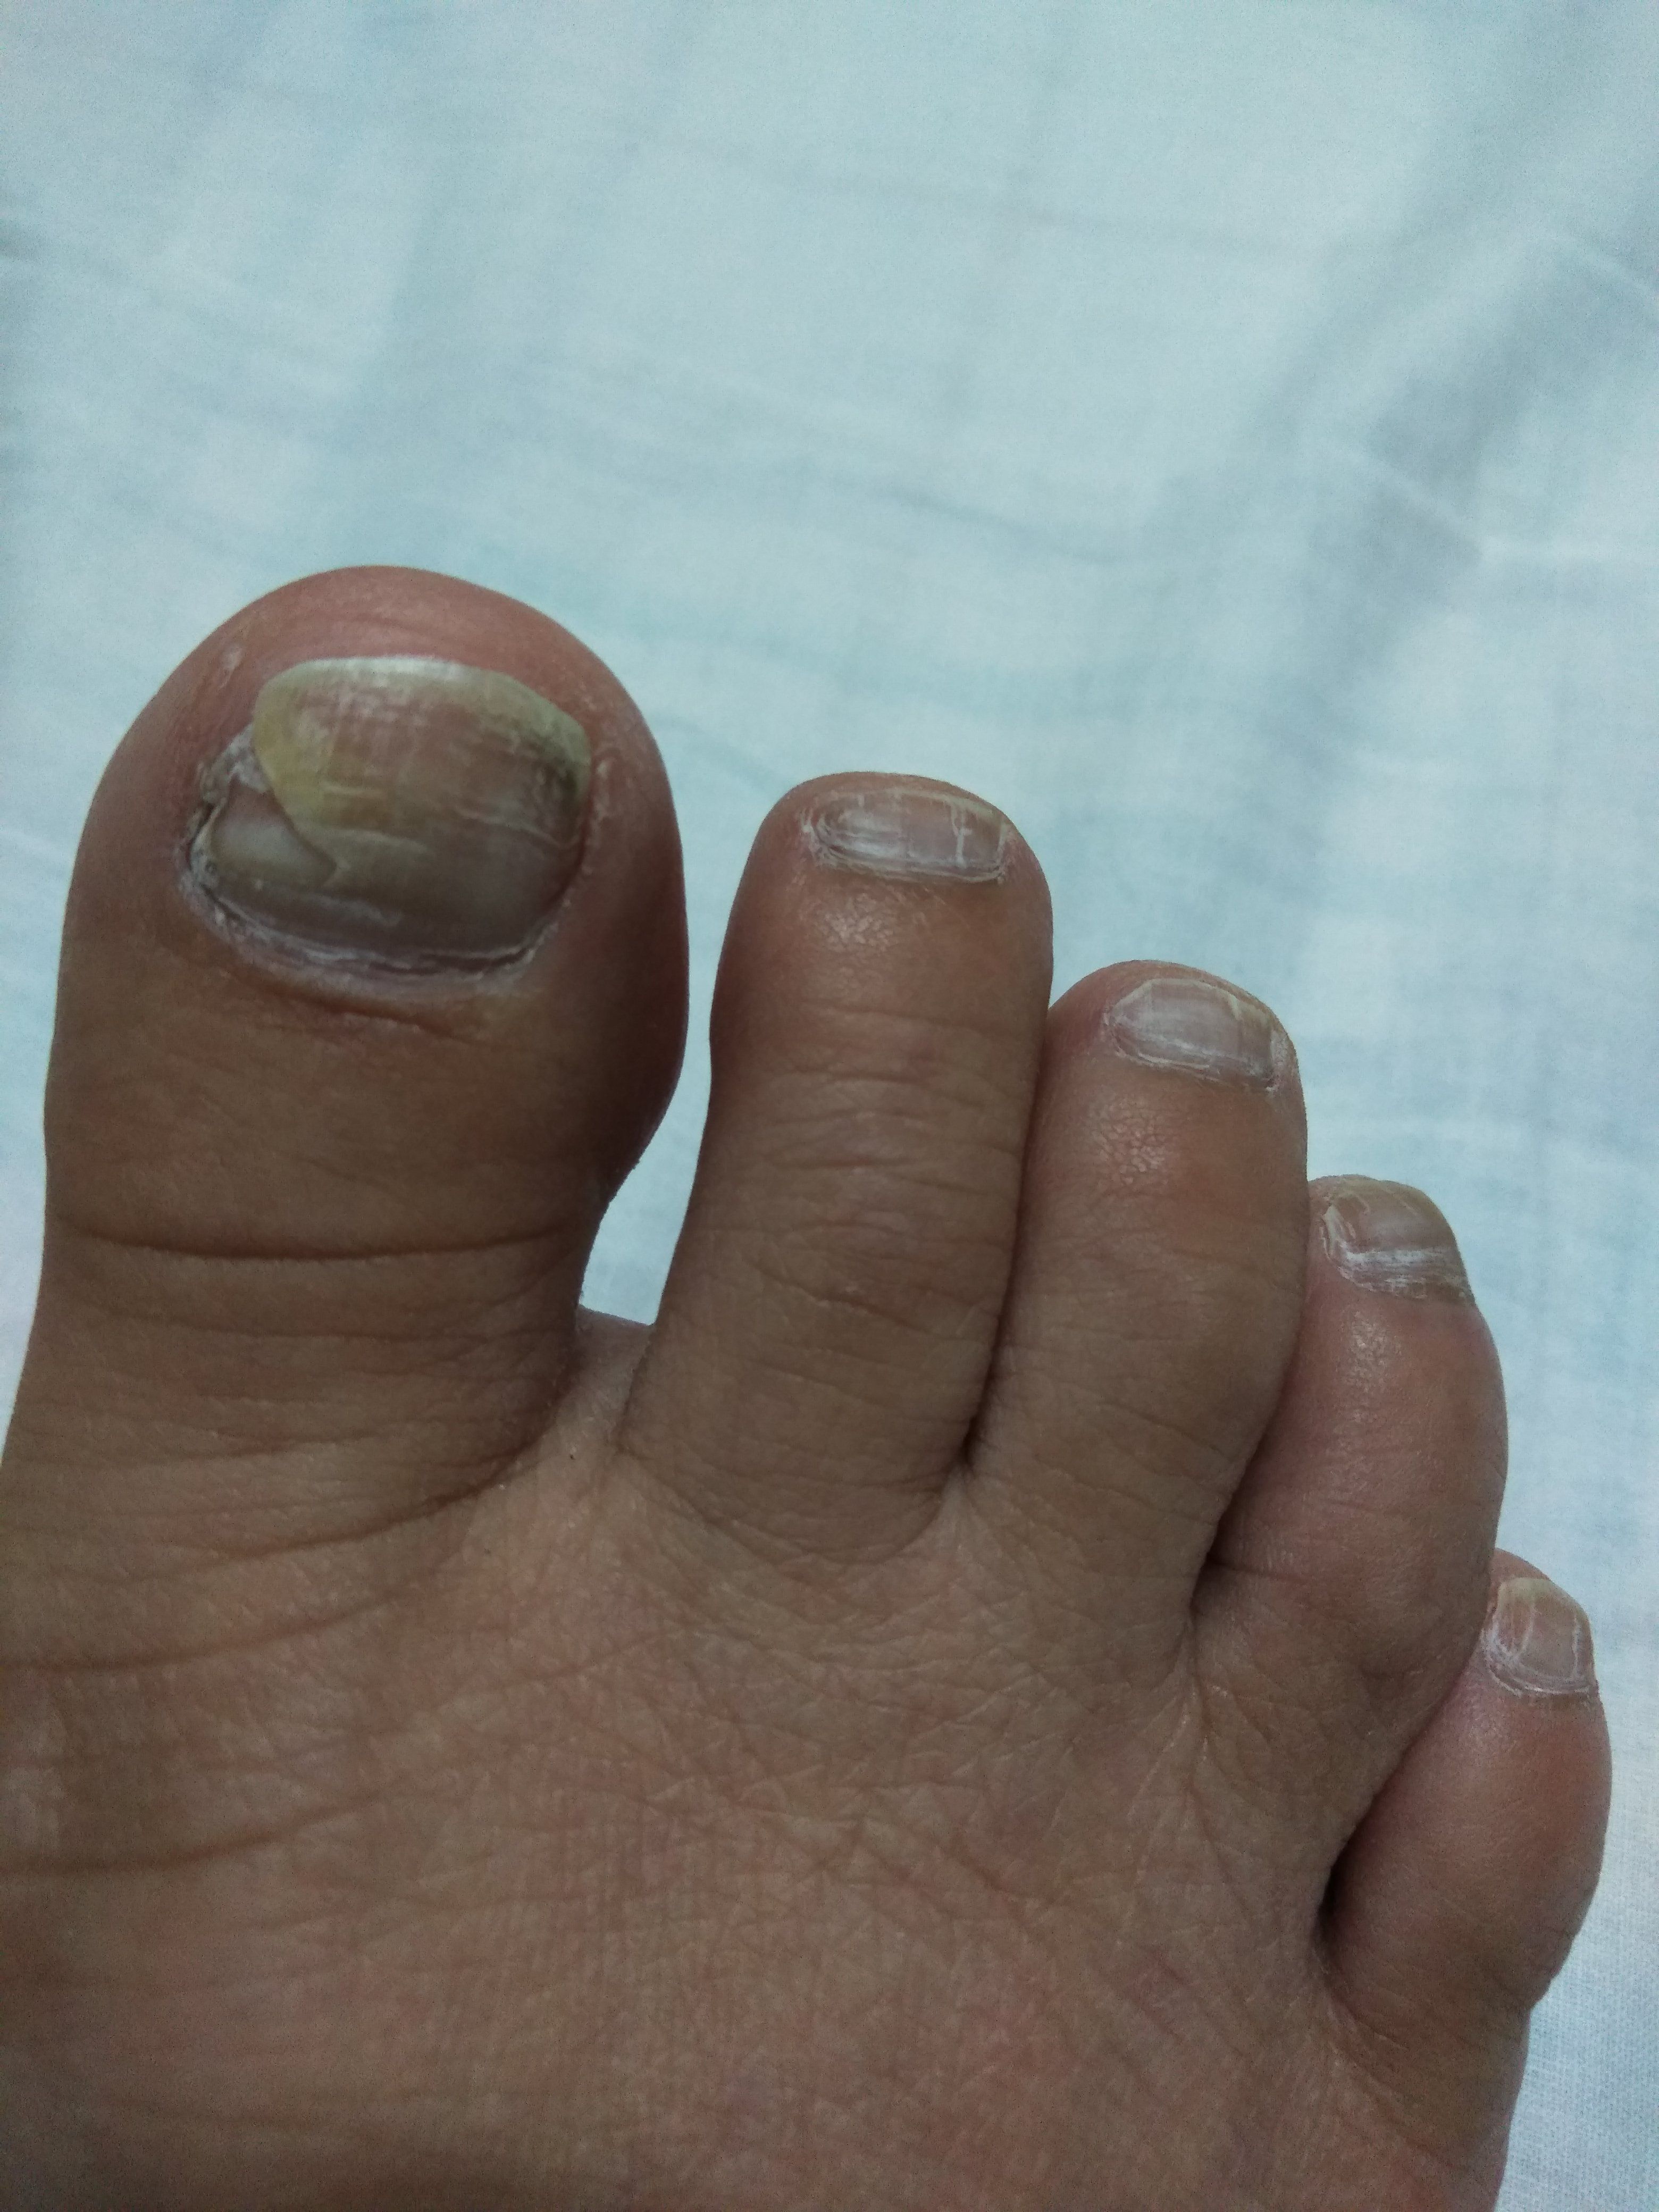 足 の 親指 の 爪 が 剥がれ た